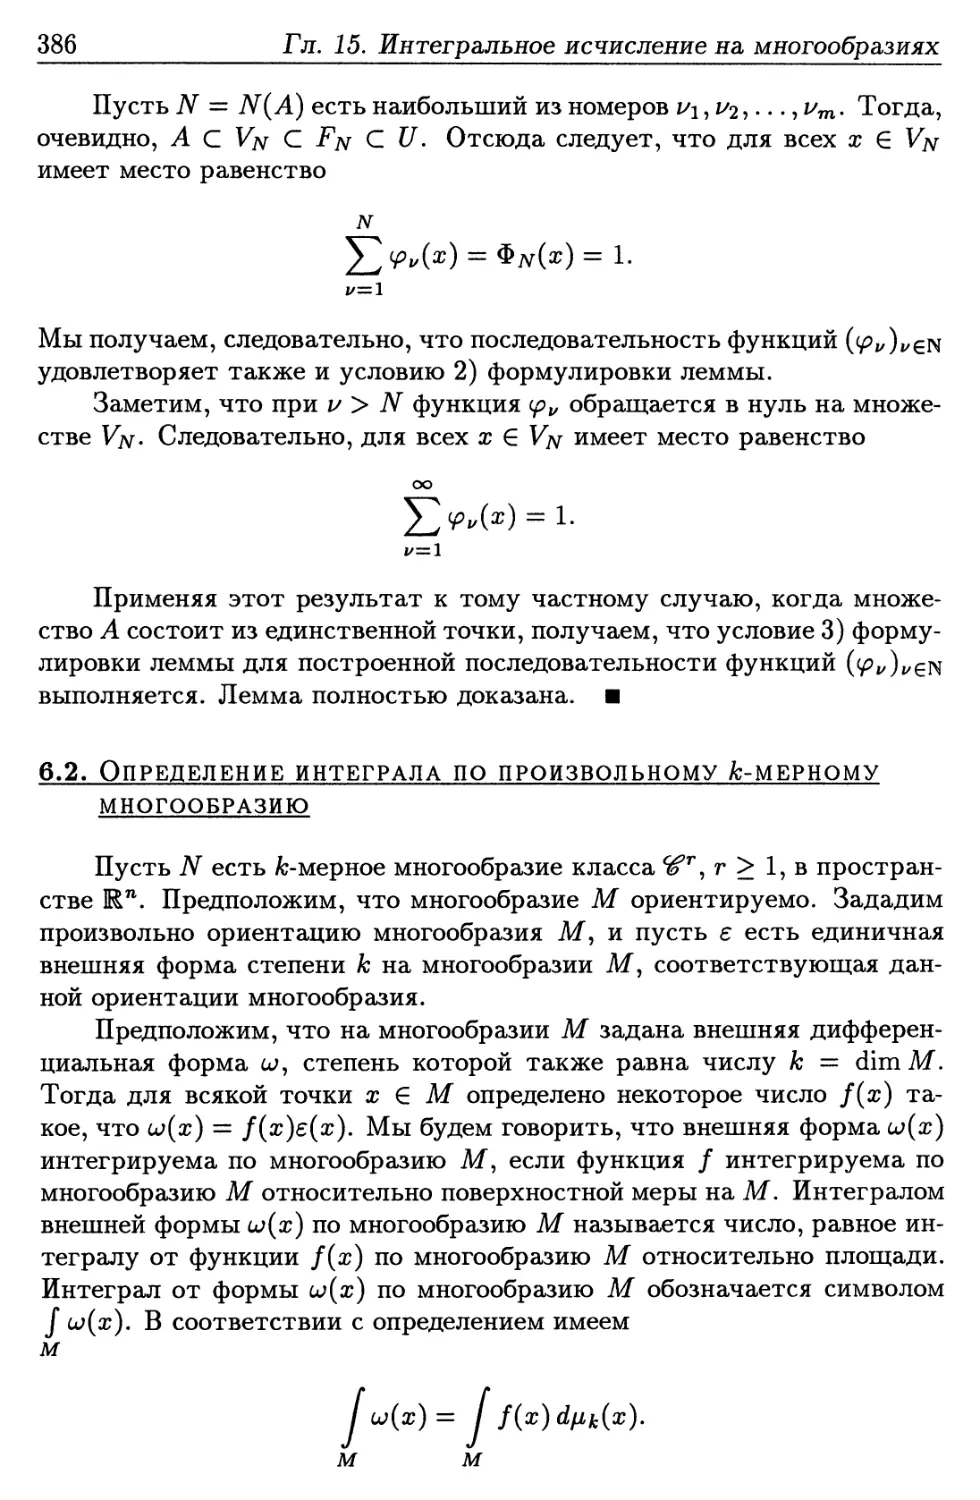 6.2. Определение интеграла по произвольному k-мерному многообразию